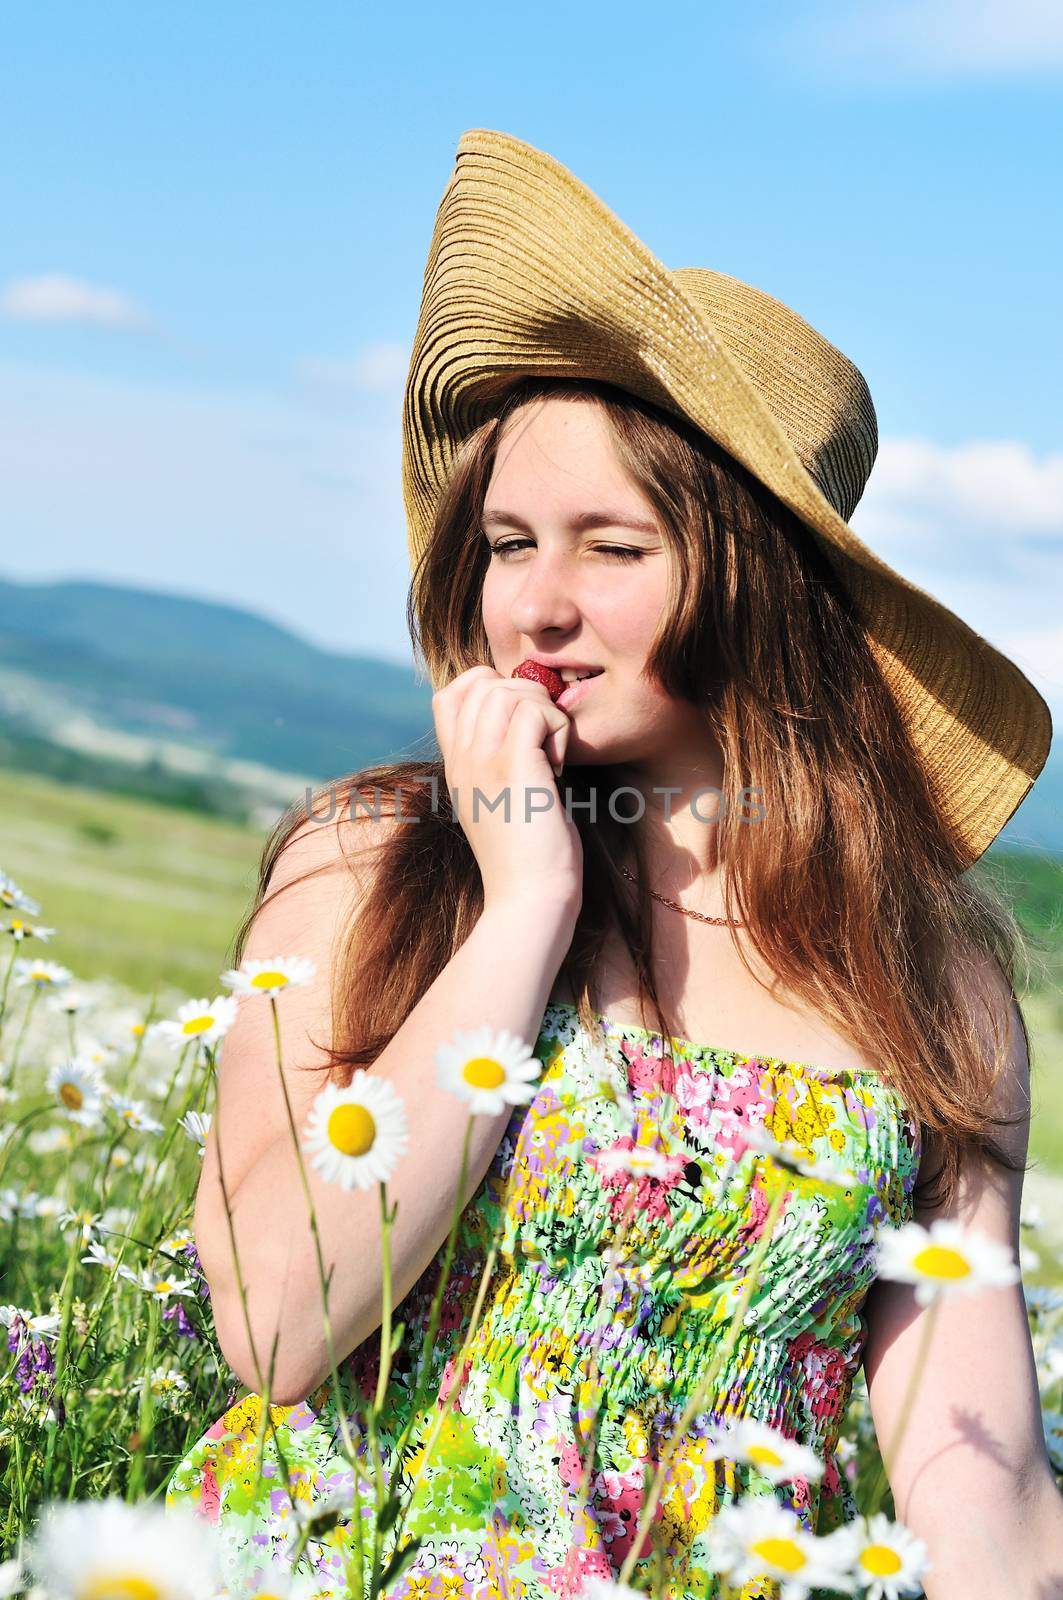 beautiful teen girl wearing srtaw hat enjoying strawberry in daisy field 